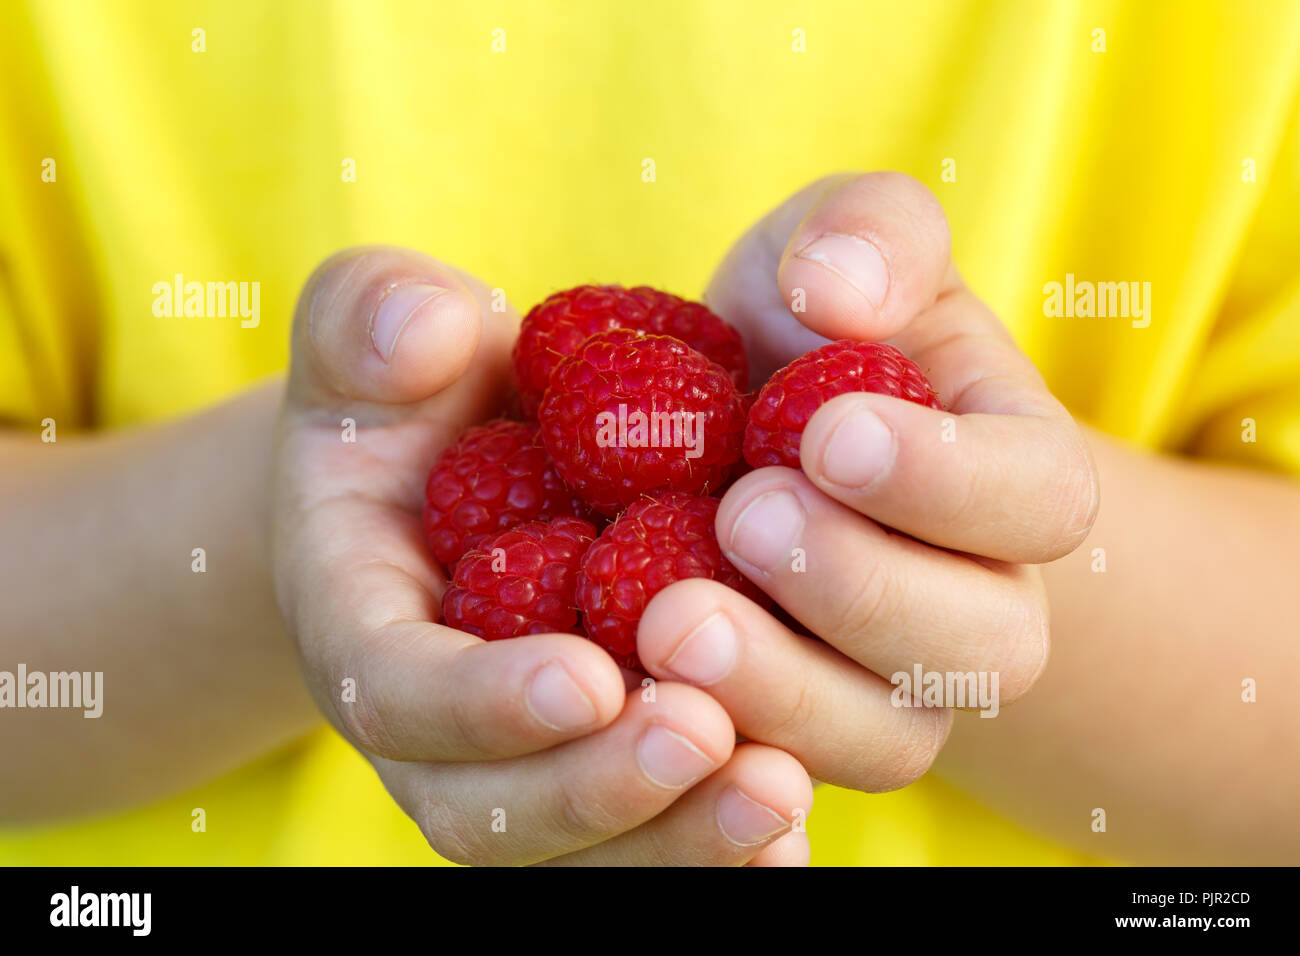 Petits fruits rouges framboises fruits d'été fruits framboise mains tenant un enfant petit garçon piscine Banque D'Images